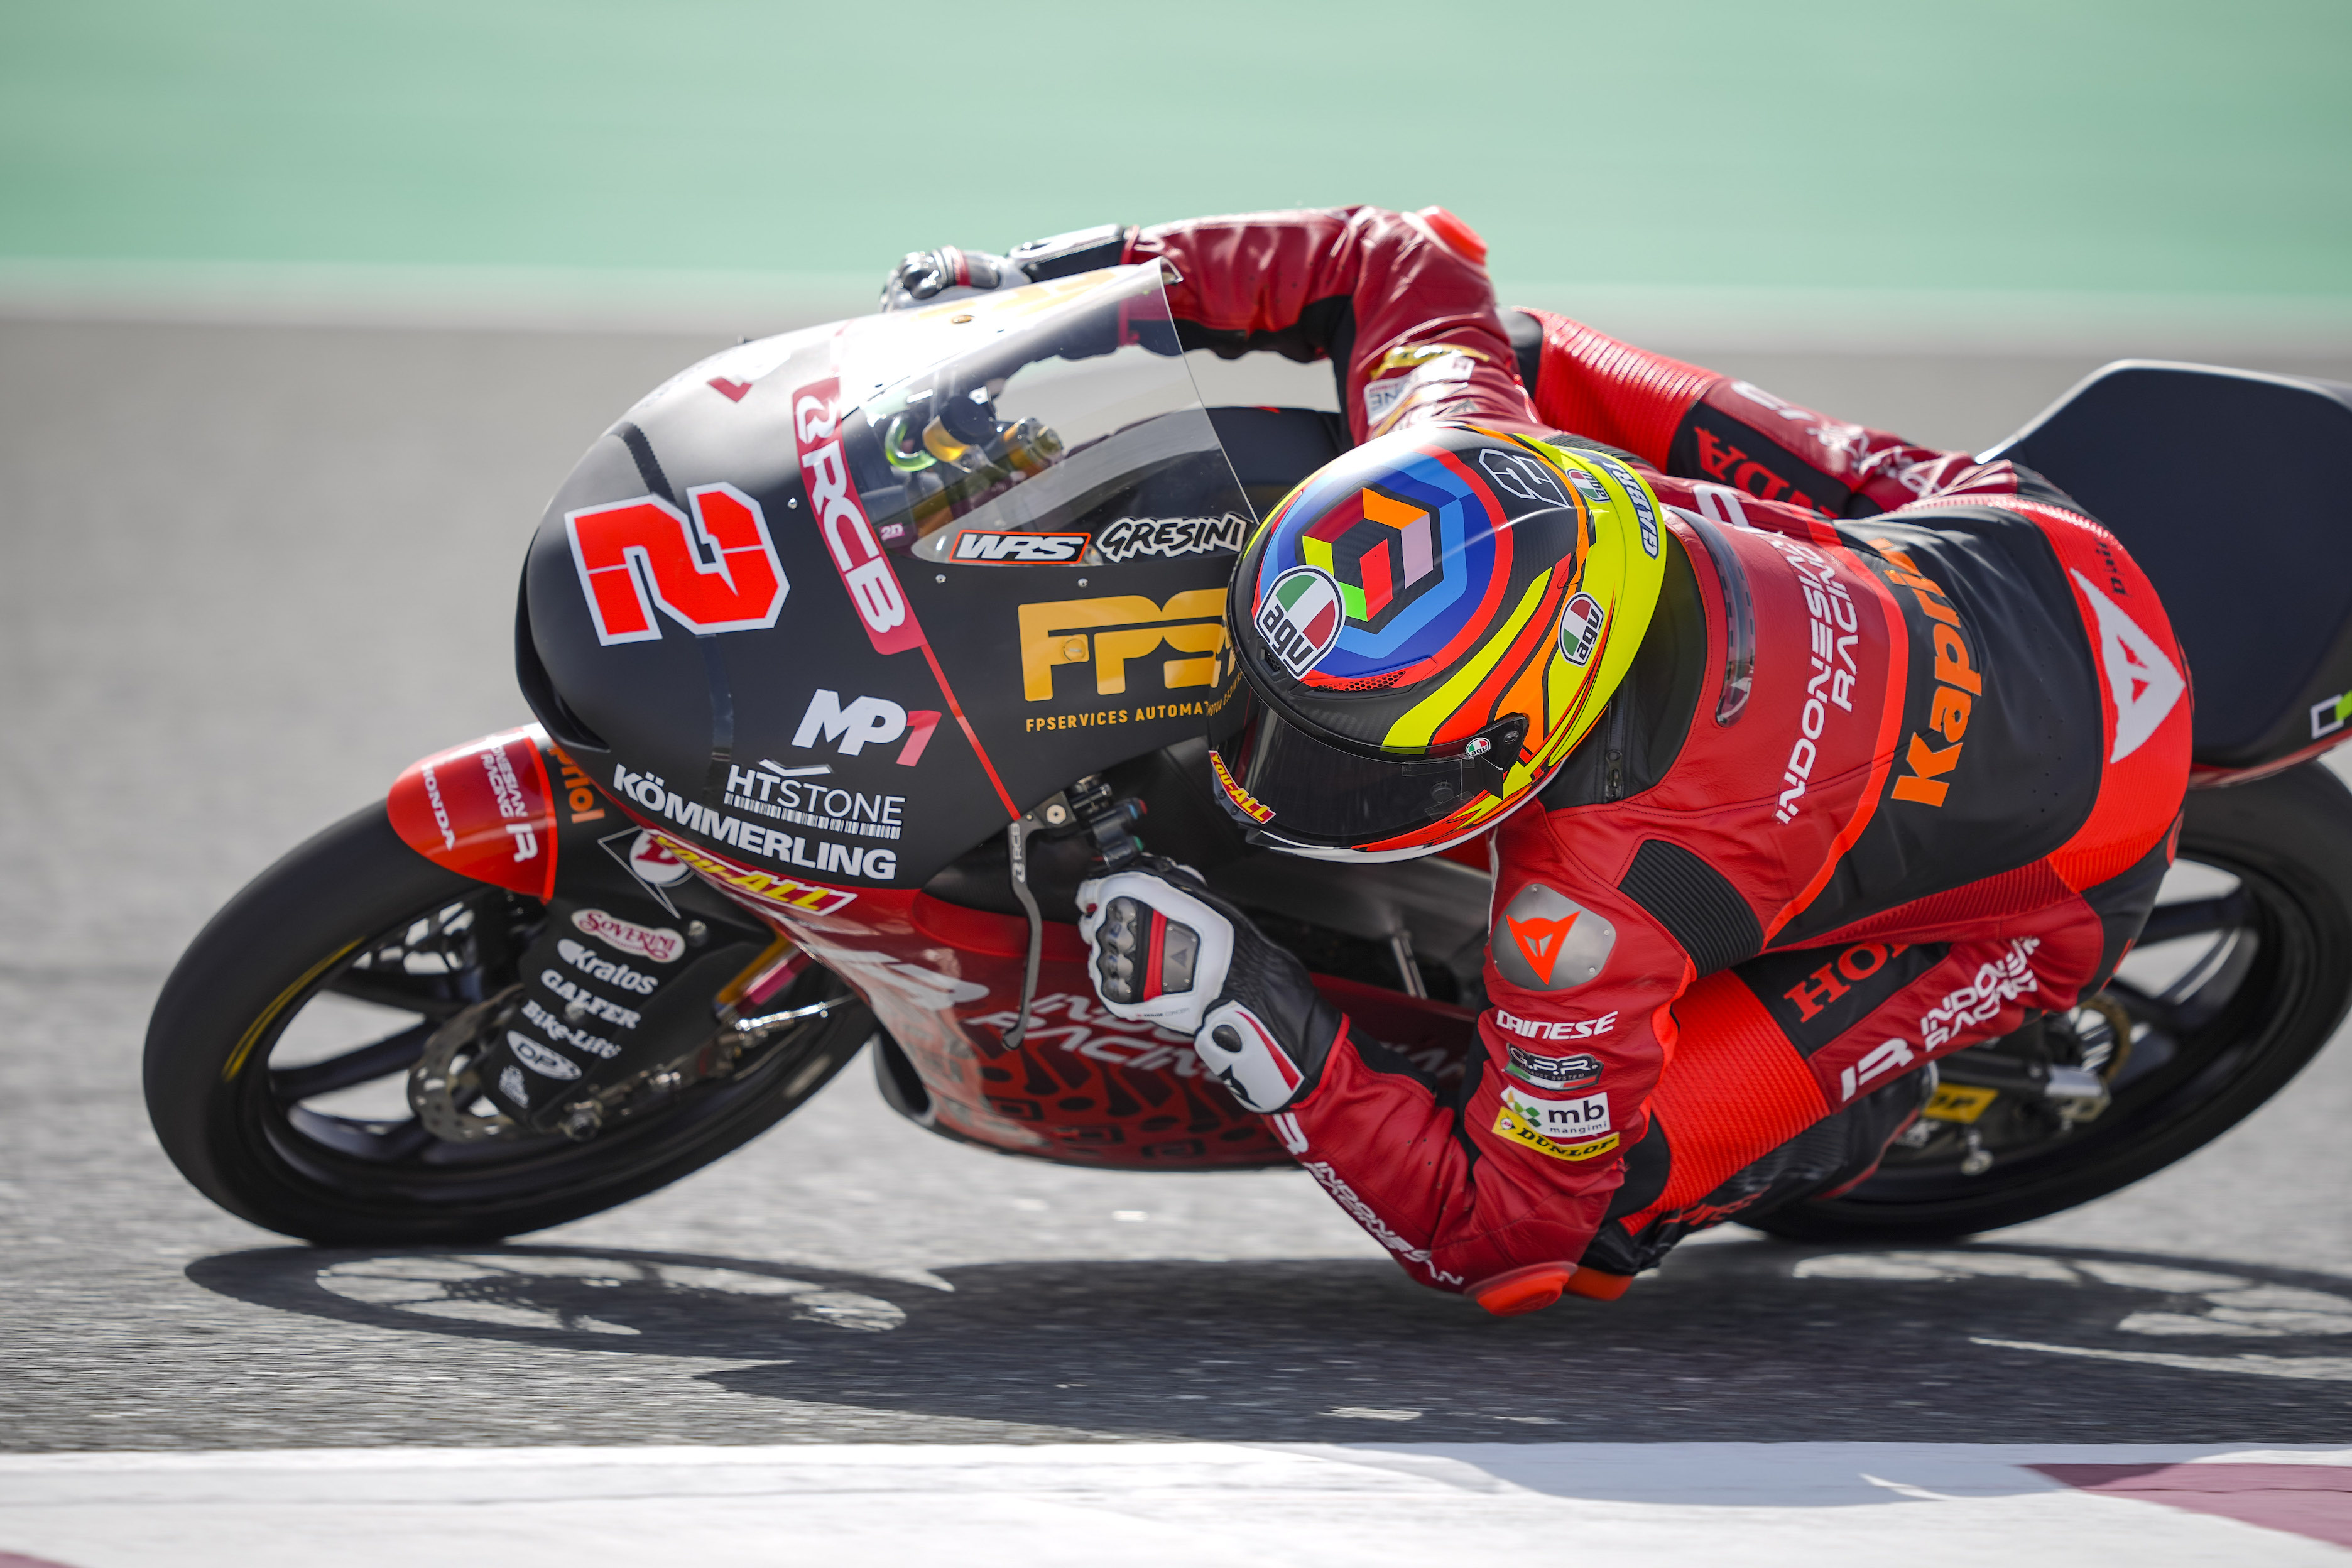 Hasil FP2 Moto3 GP Portugal 2021: Rider Indonesian Racing Gresini Tercepat, Andi Gilang Turun 13 Setrip